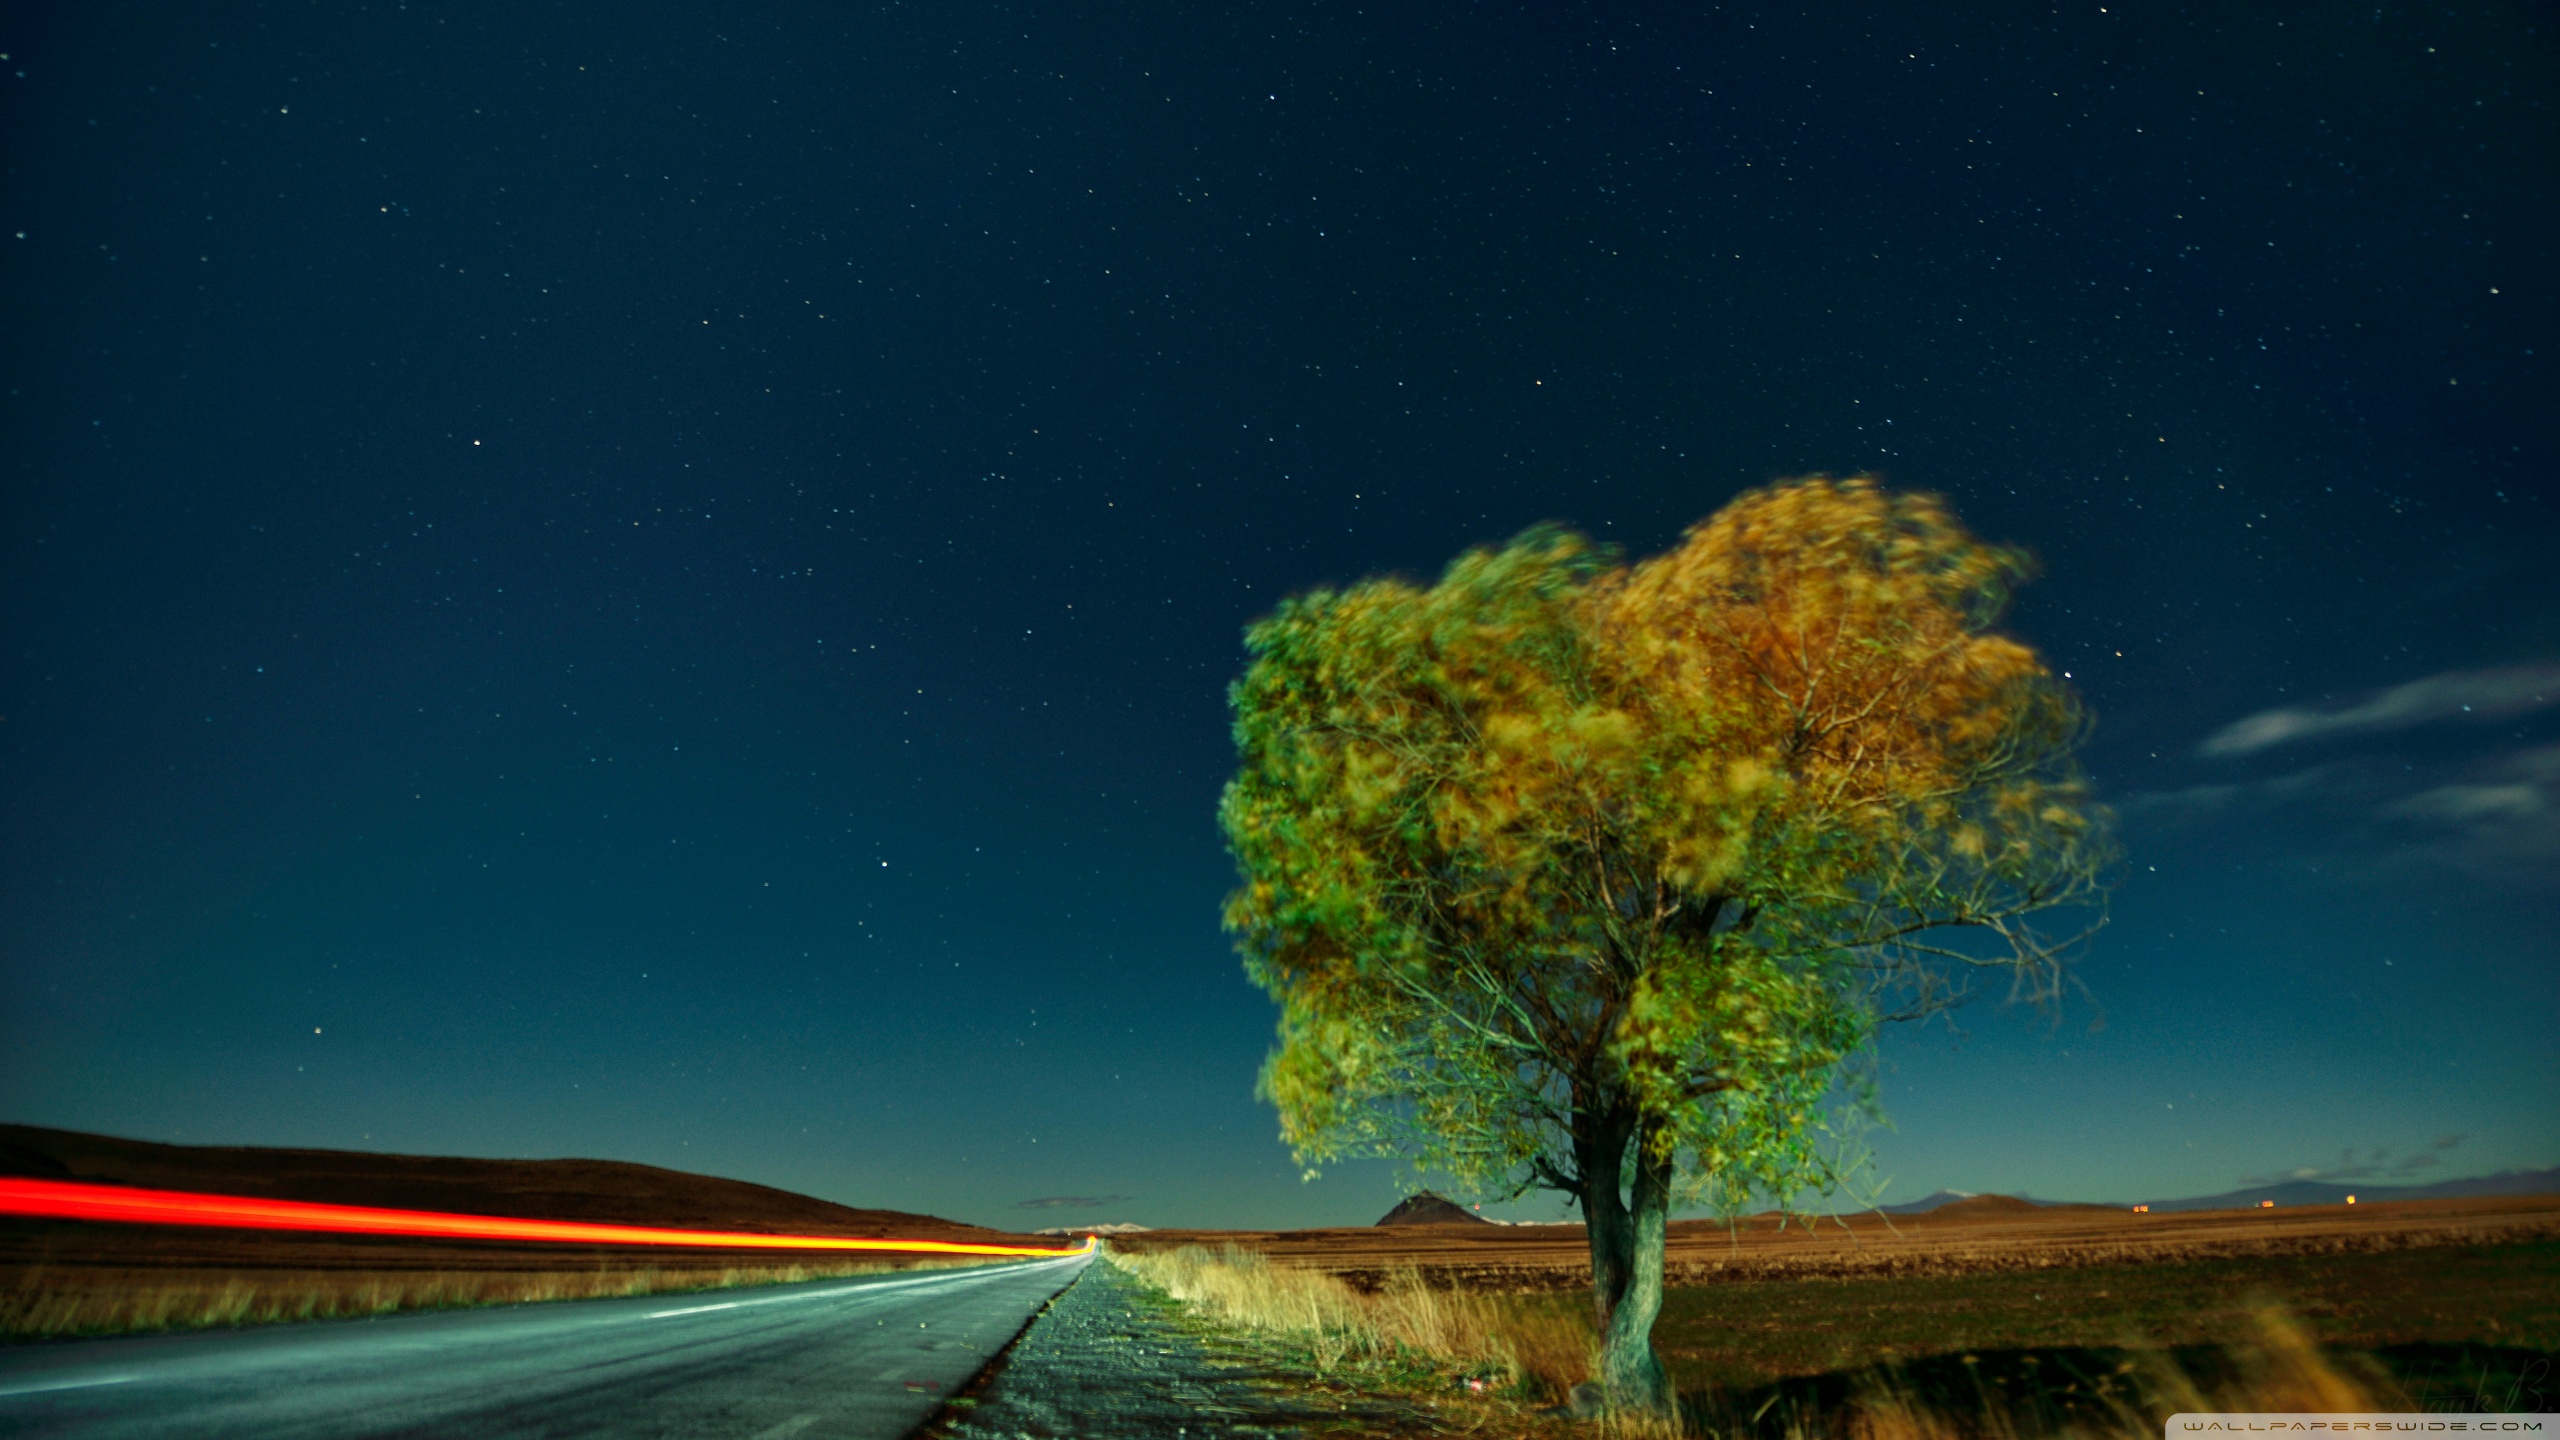 삼성 갤럭시 s5 라이브 배경 화면,하늘,자연,자연 경관,나무,밤